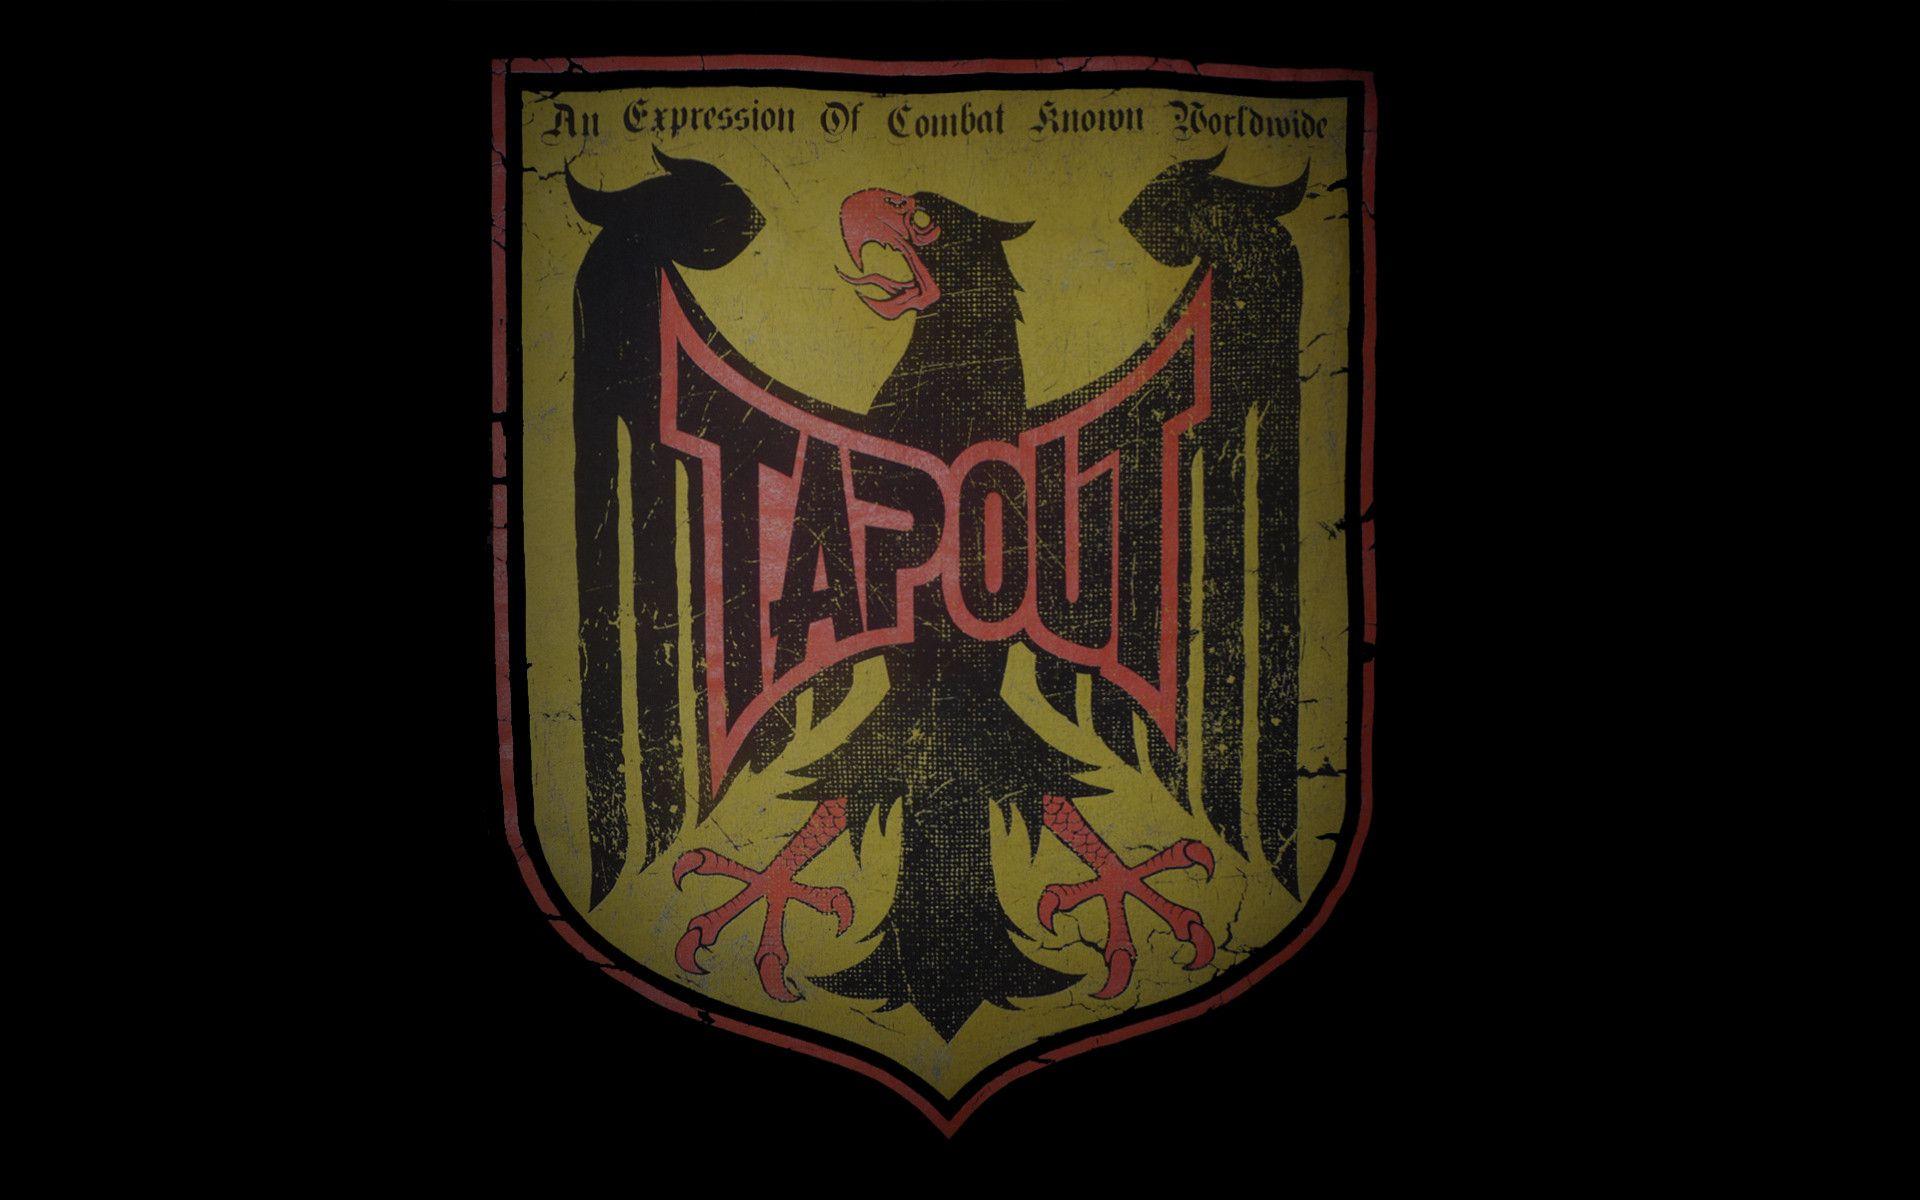 Tapout Wallpaper HD